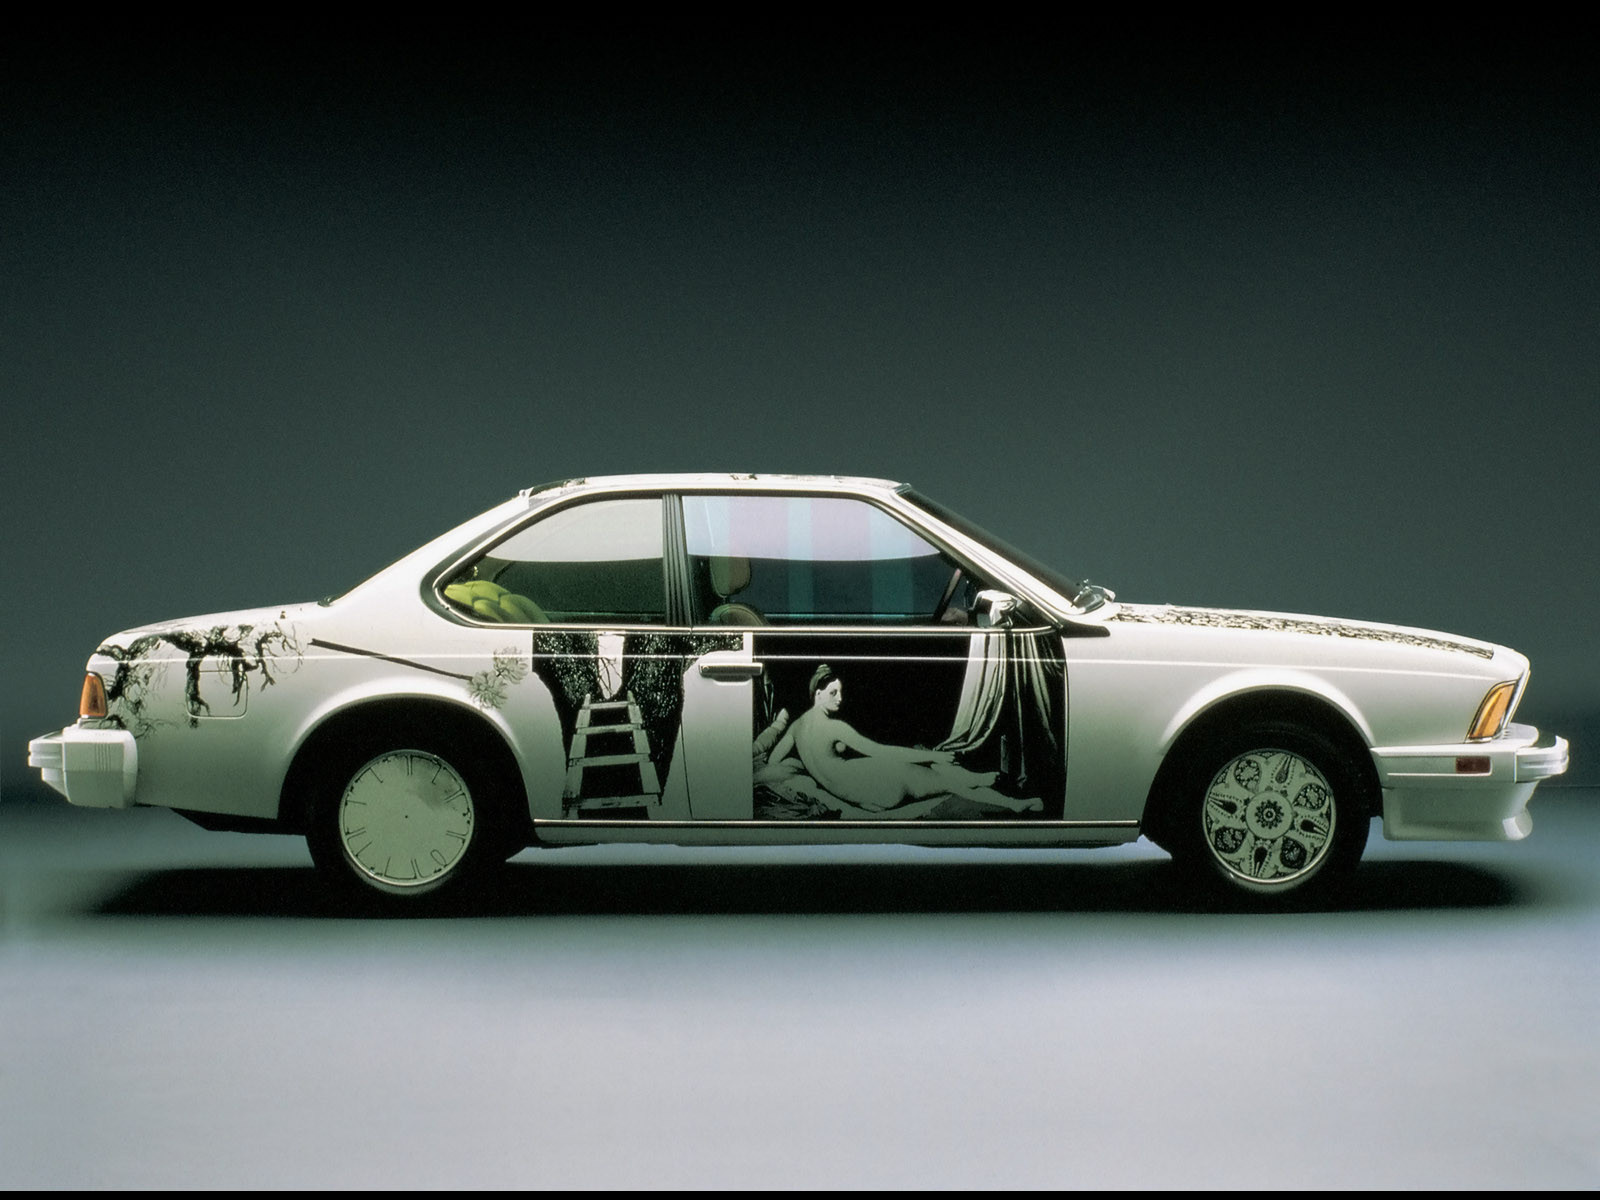 [1986-BMW-635-CSi-Art-Car-Robert-Rauschenberg-Side-1600x1200.jpg]